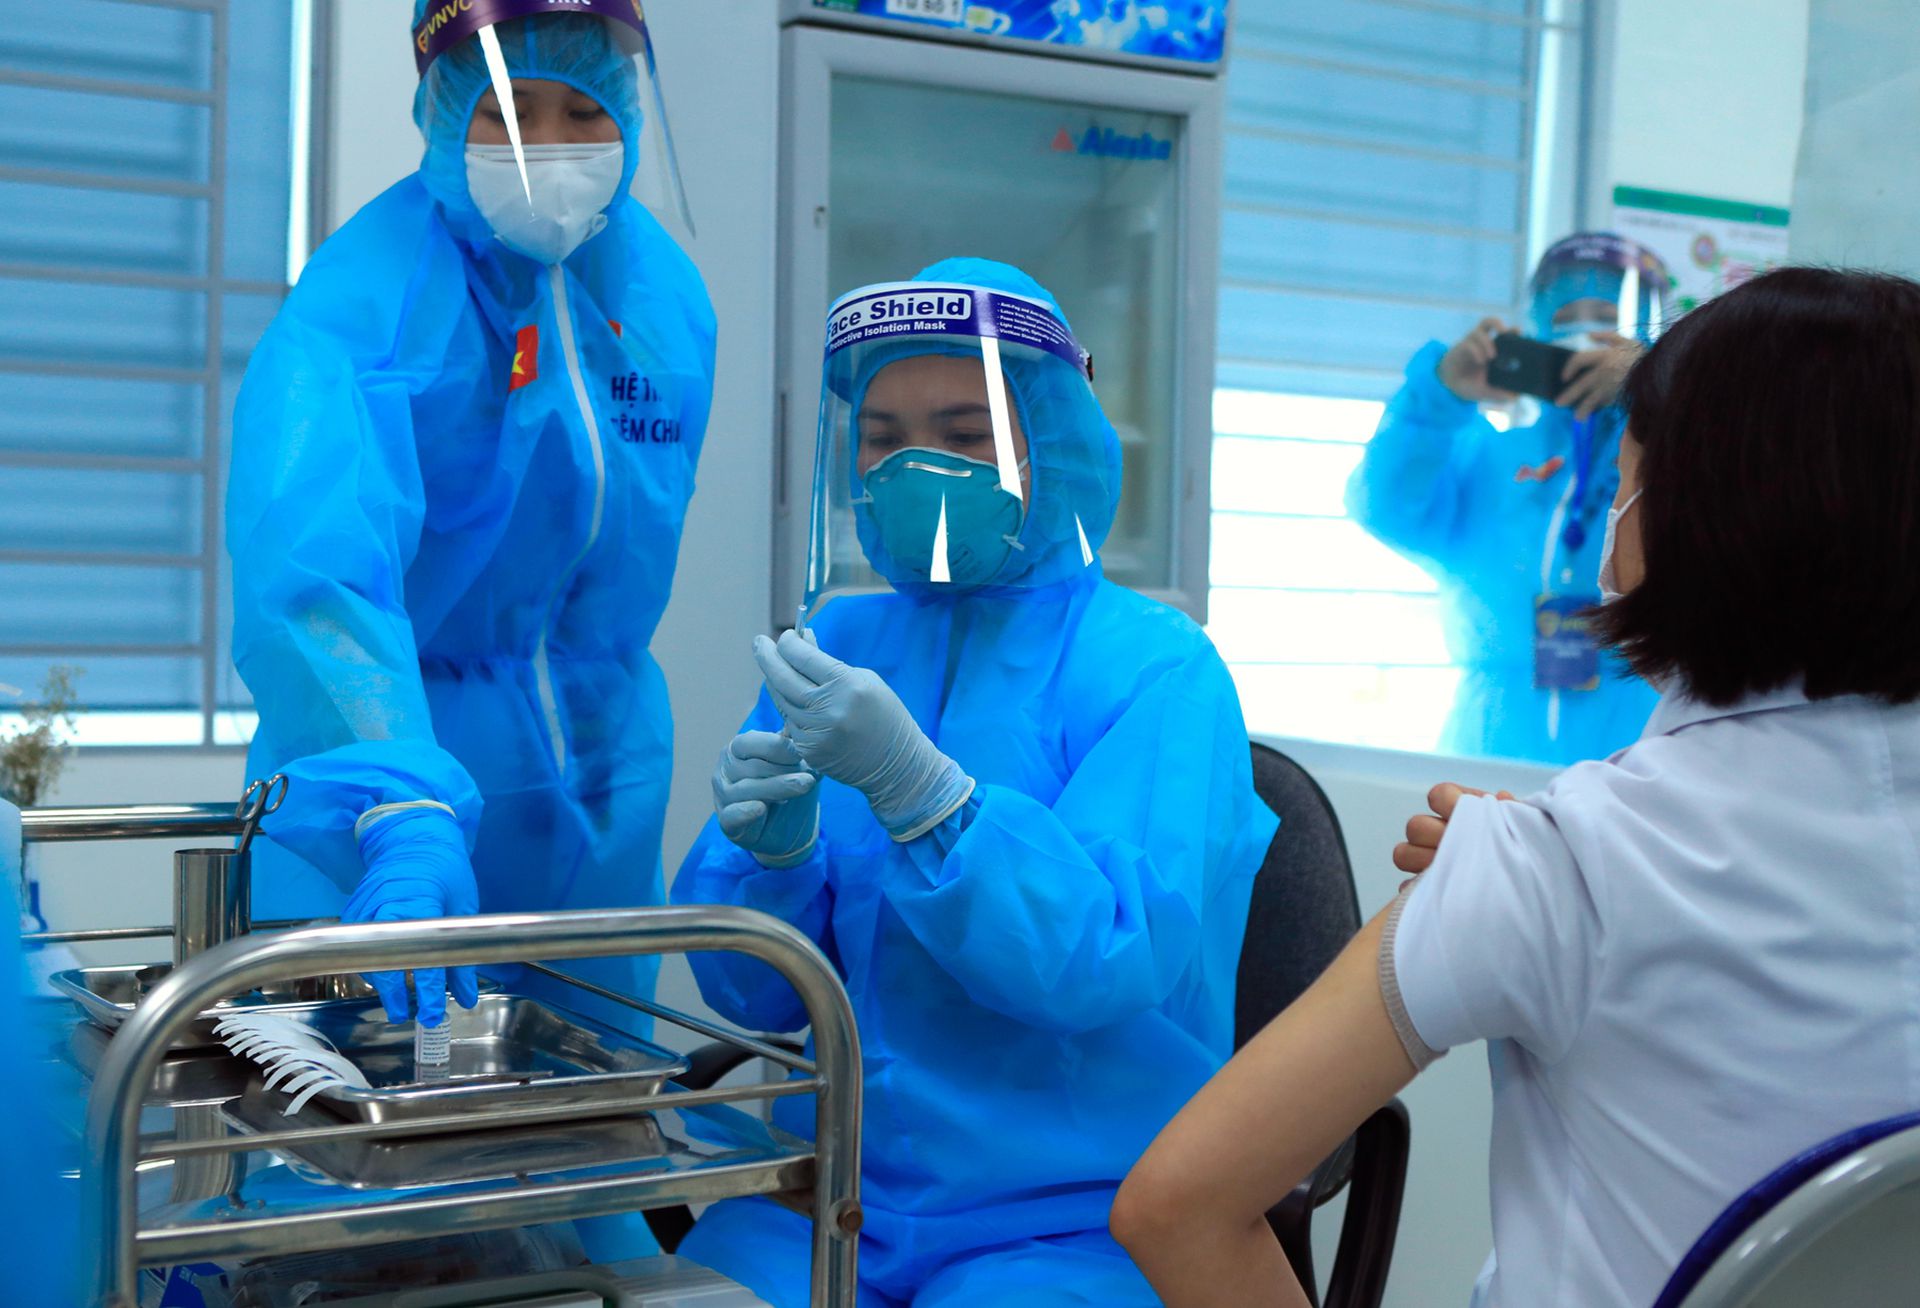 越南卫生工作者是第一批接种疫苗的人群，5月7日，一名37岁的医护人员在接种阿斯利康疫苗后死于血栓症，这使得越南开始对这种廉价疫苗产生警惕。（美联社）